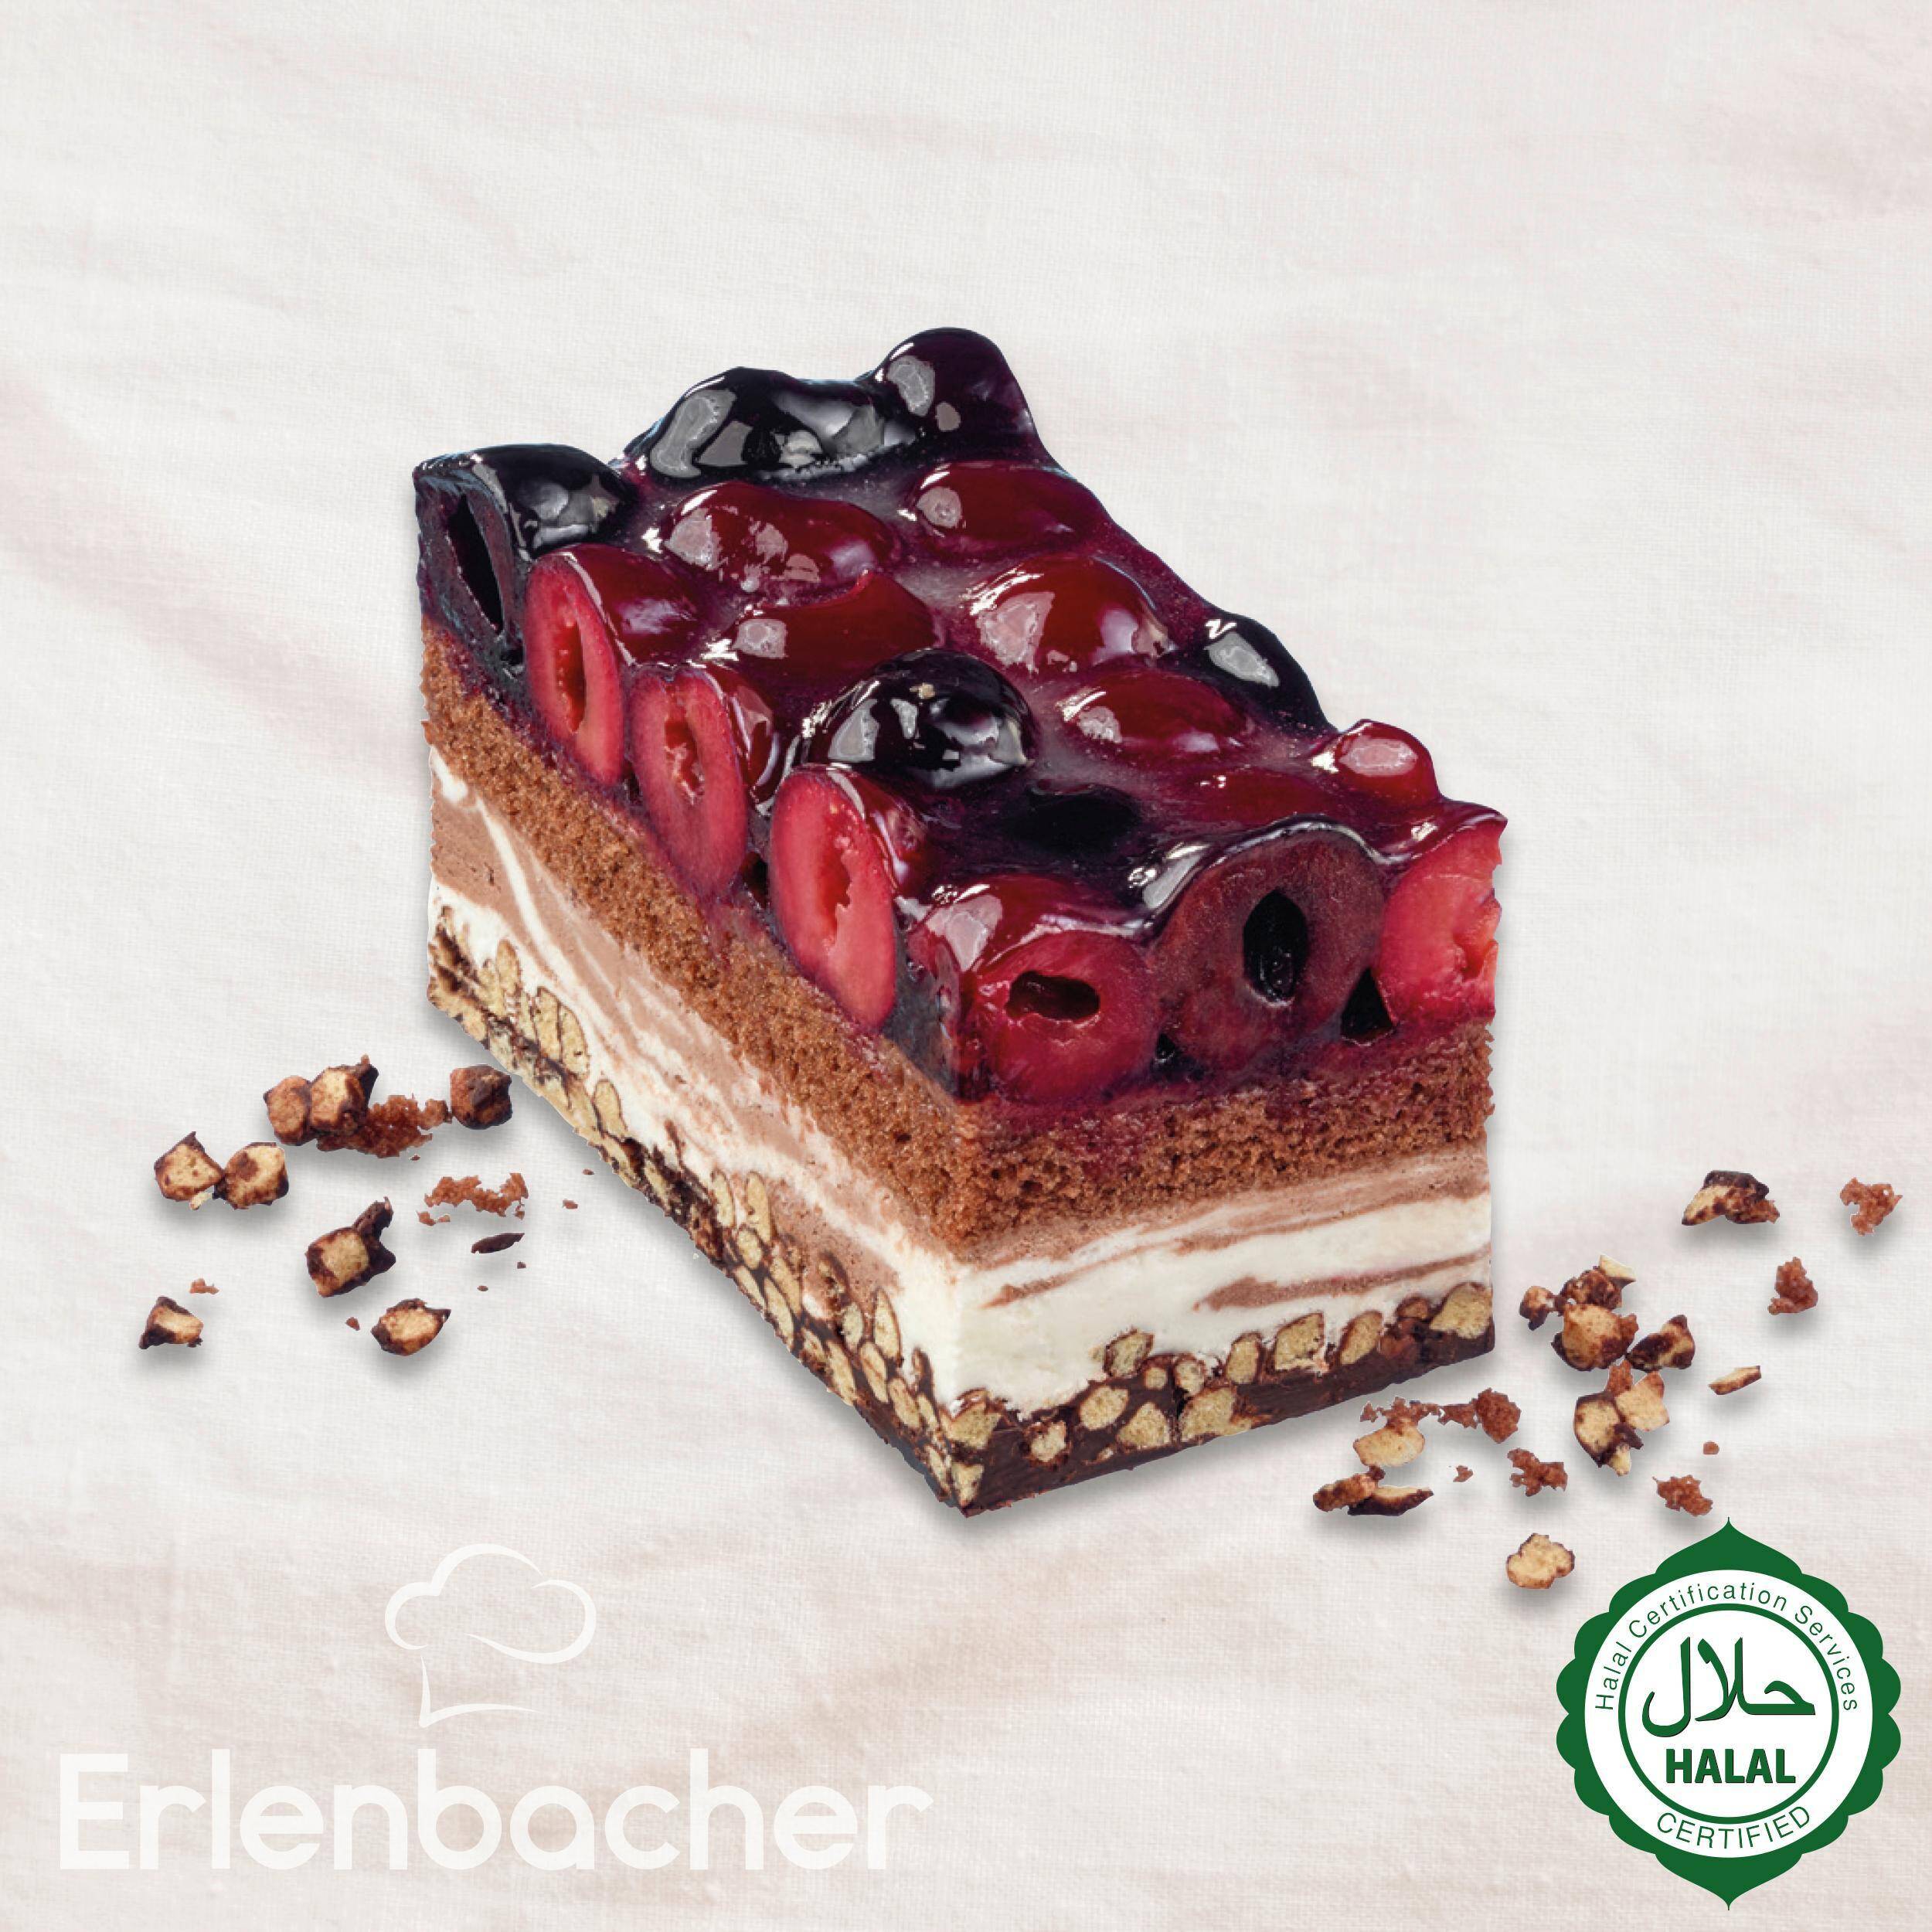 Ciasto wiśniowo-czekoladowe Crisp 2,1kg/4 Erlenbacher 8106090